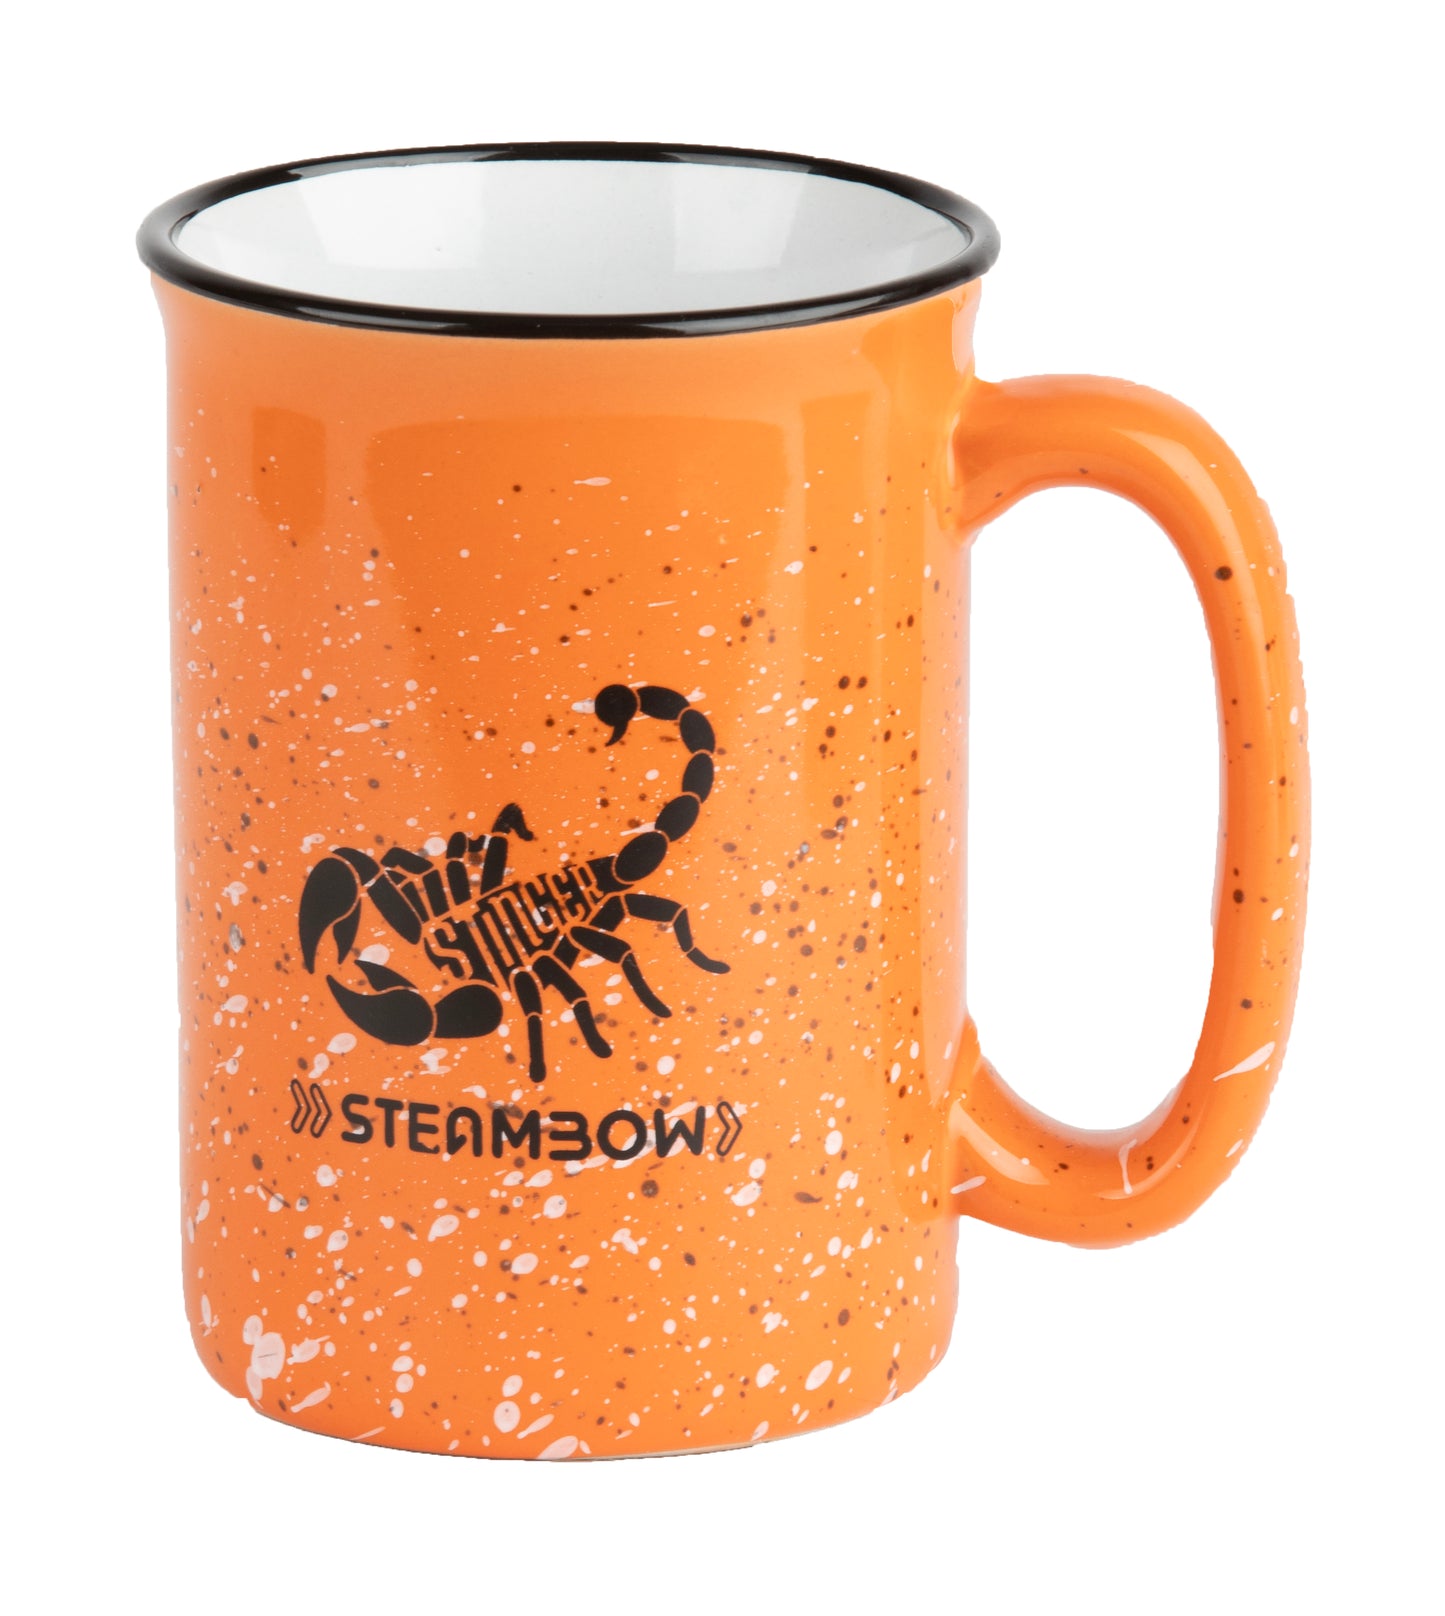 Steambow Coffee Mug